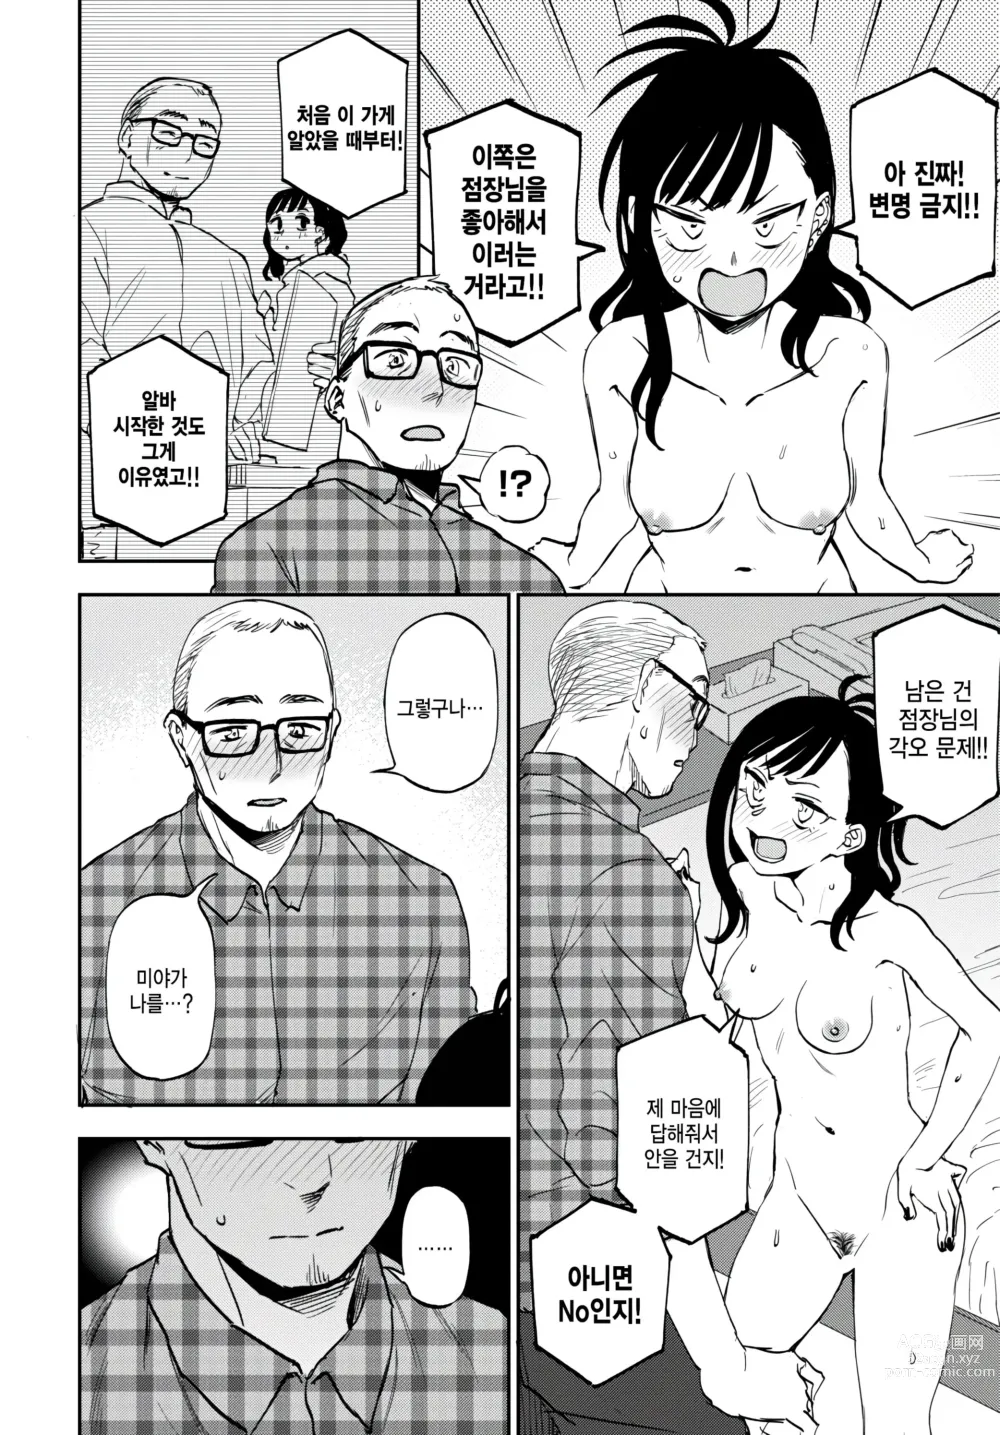 Page 6 of manga Heart mo Dekkaku!